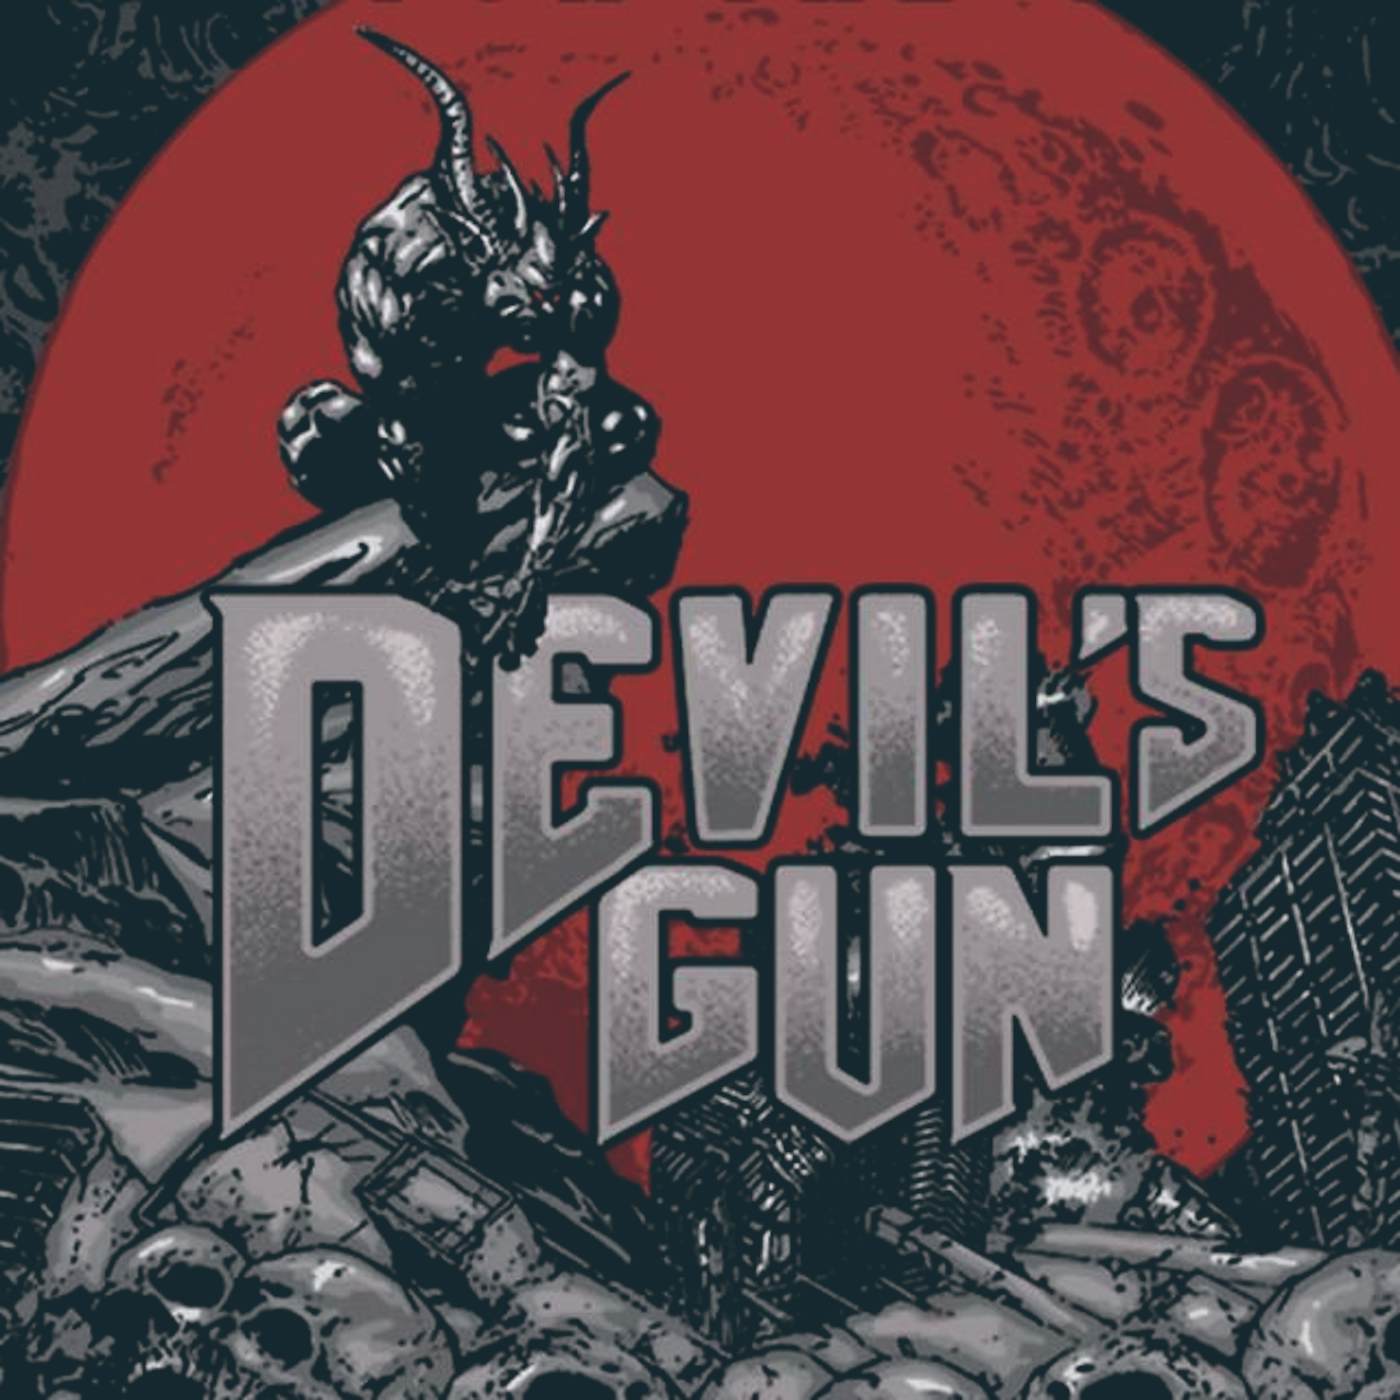 Devil's Gun